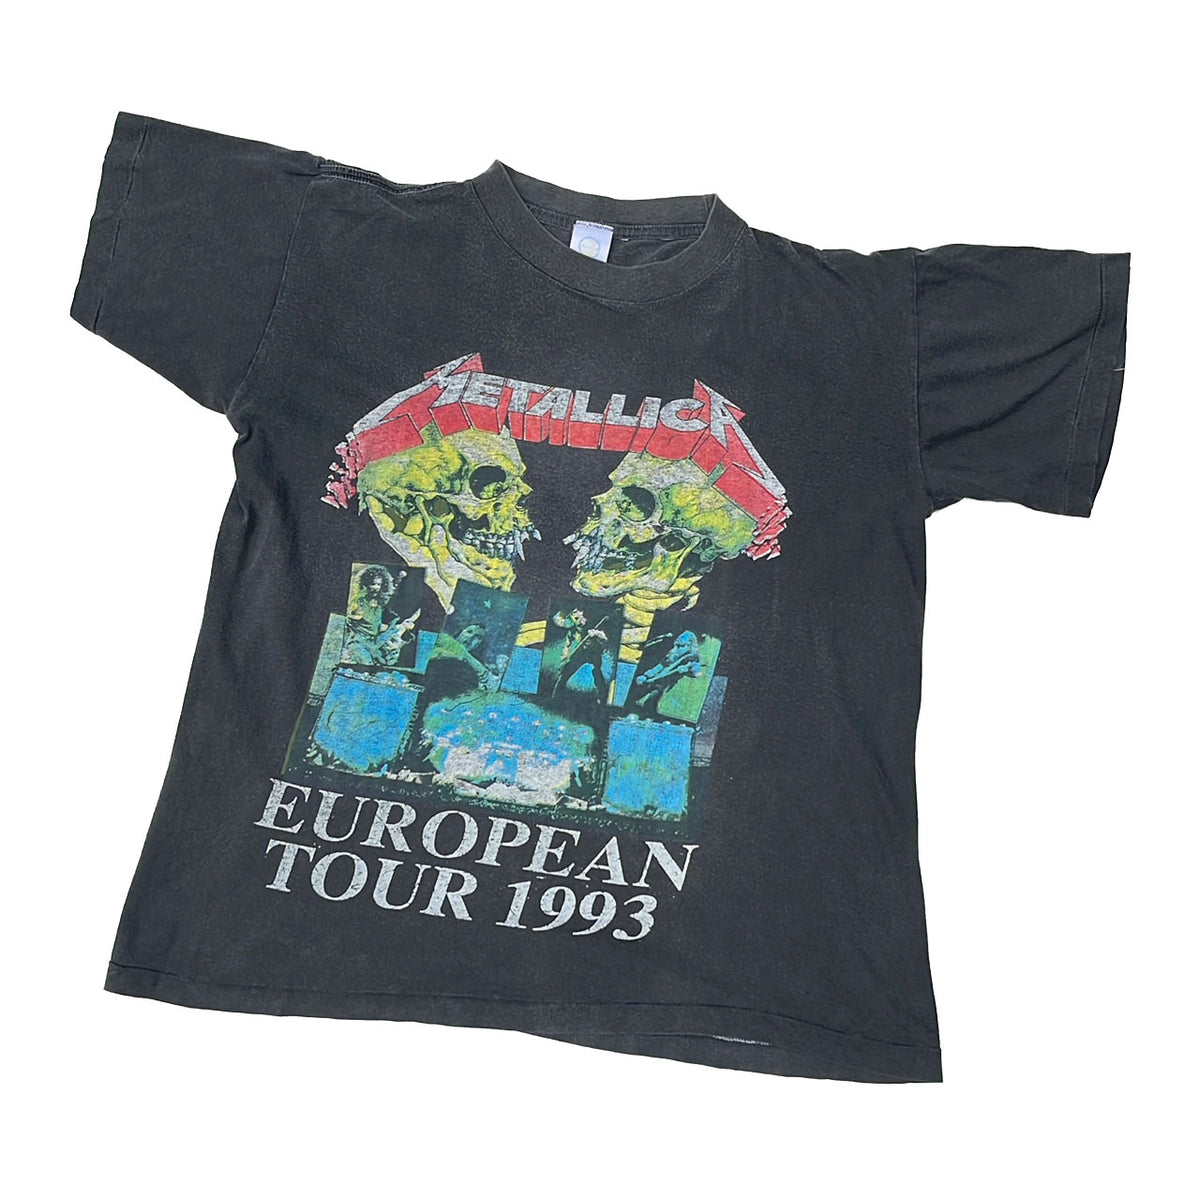 レア1993年Torhout werchter MetallicaツアーTシャツ - Tシャツ ...